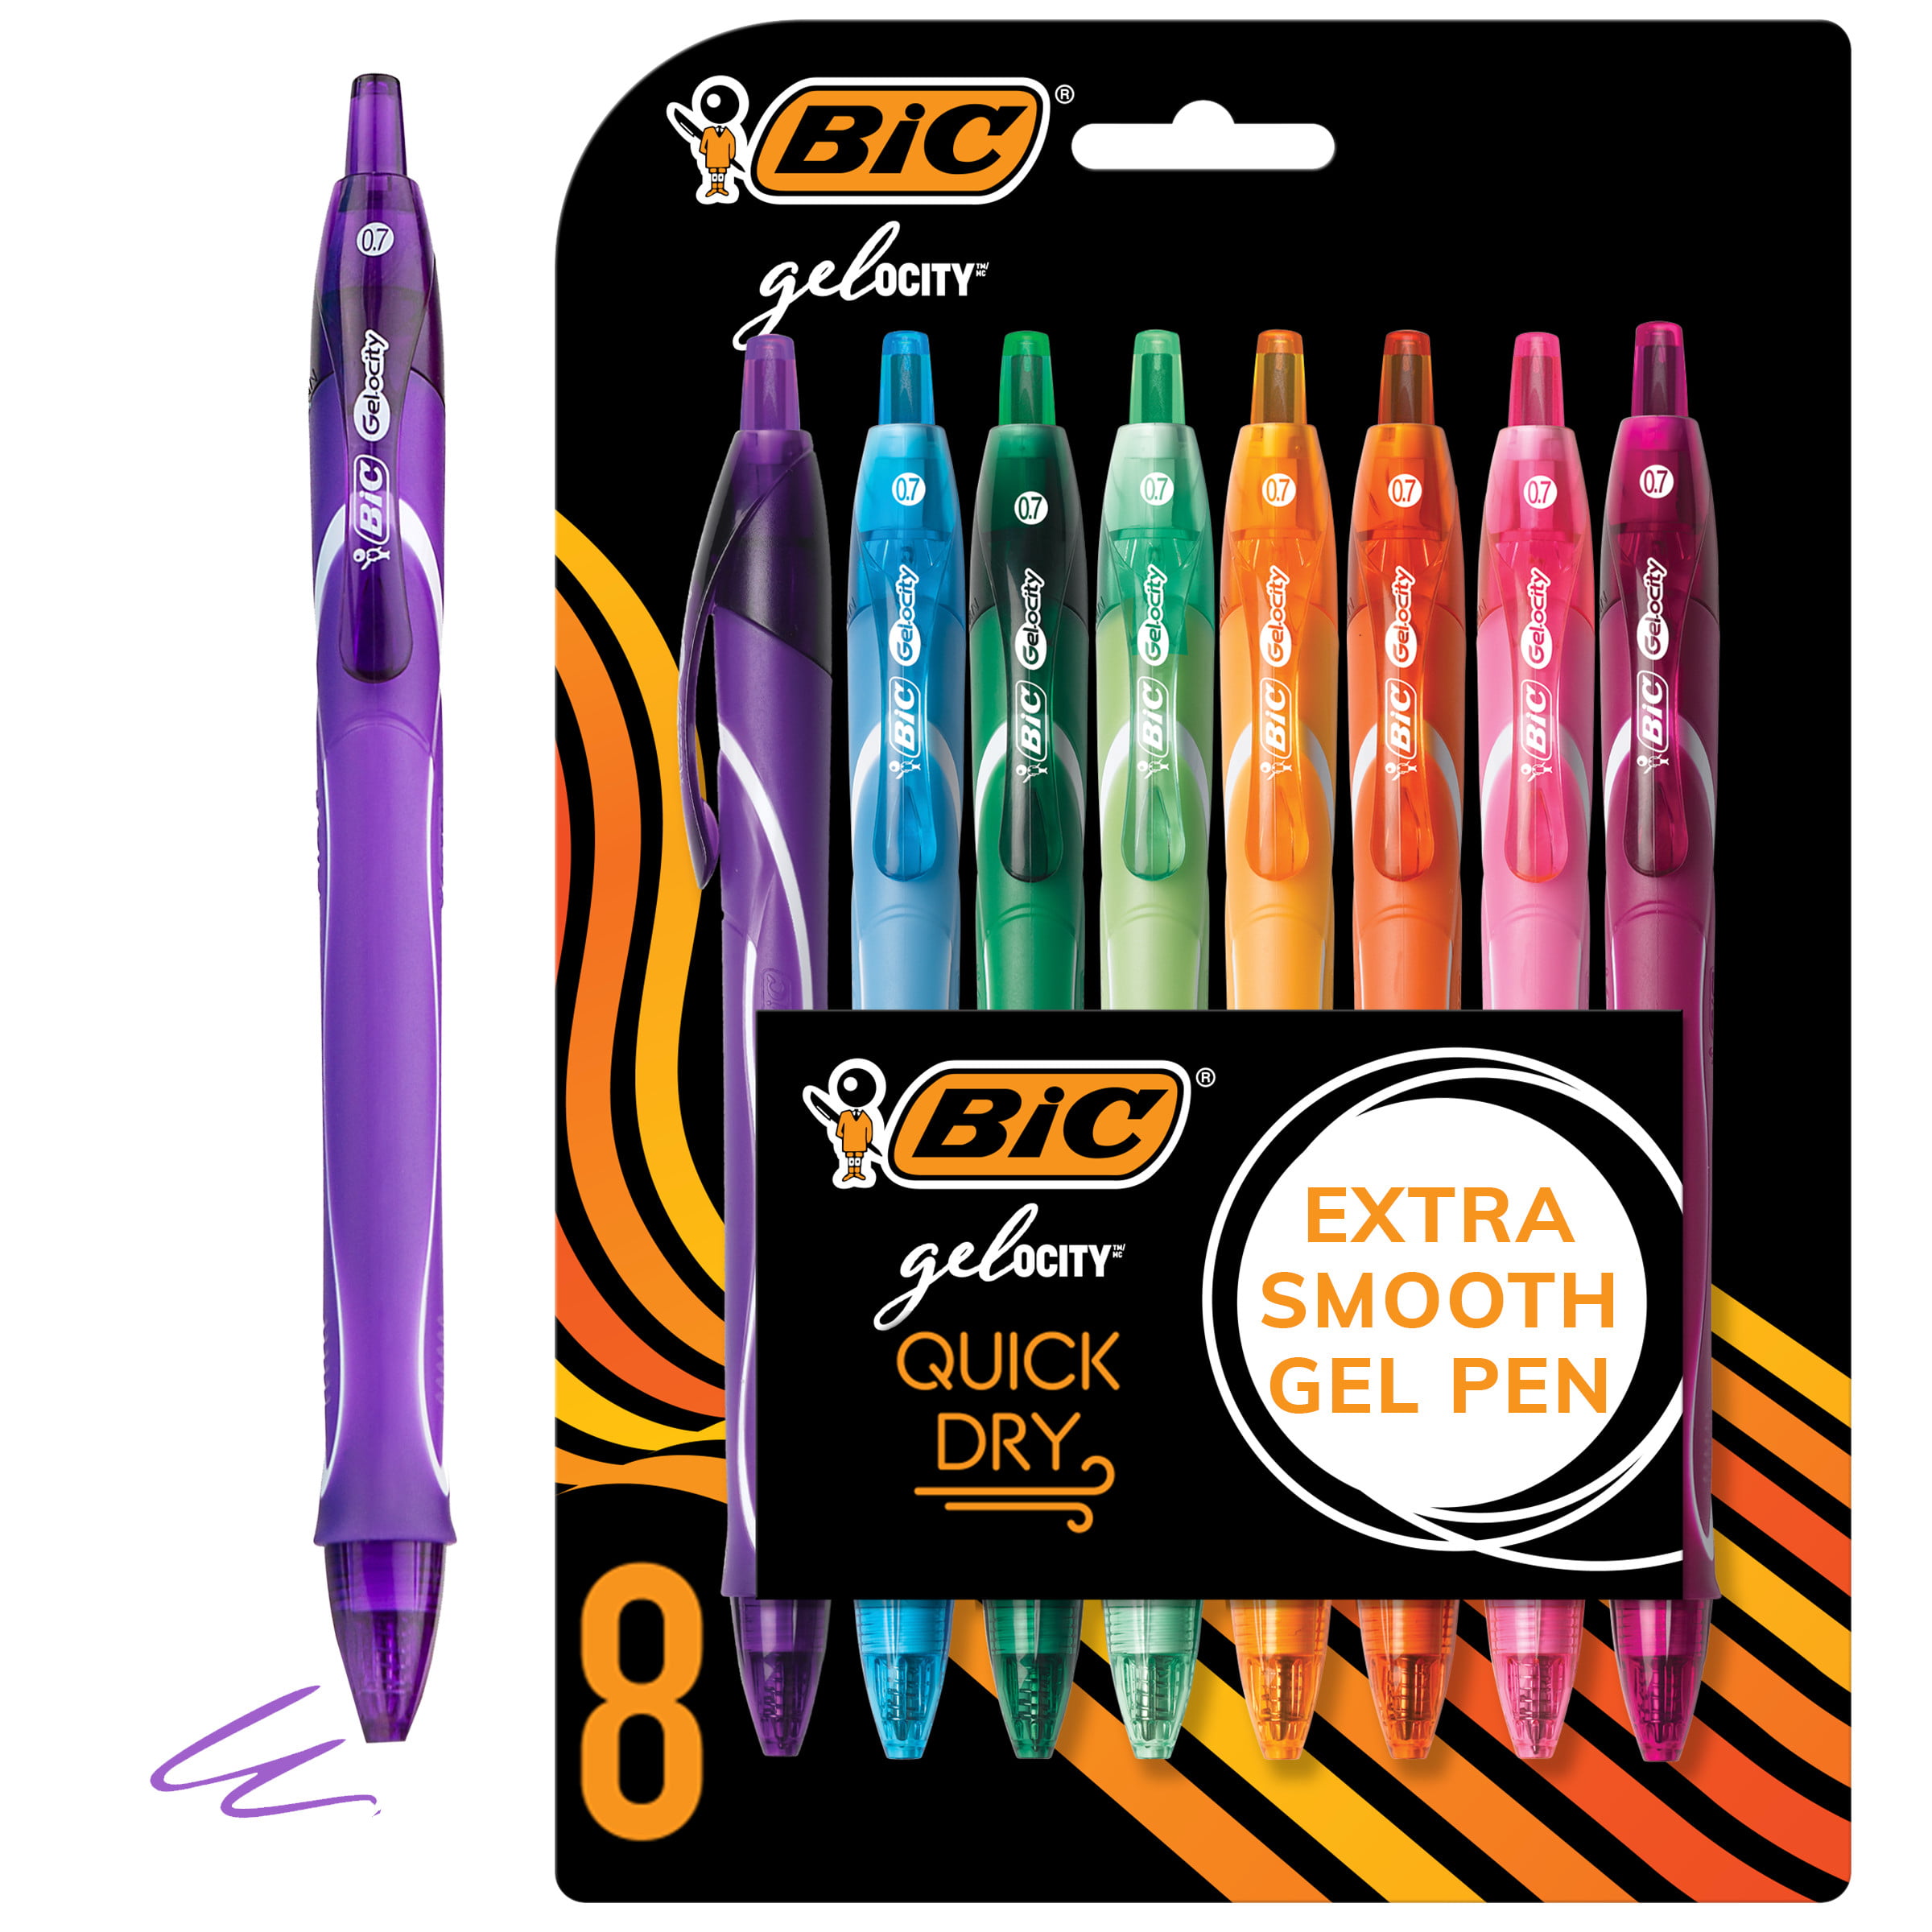 Gel-Ocity Quick Dry Gel Pens 0.7mm Medium Point Rectractable 3-Count-New Black Ink Gel Pen 